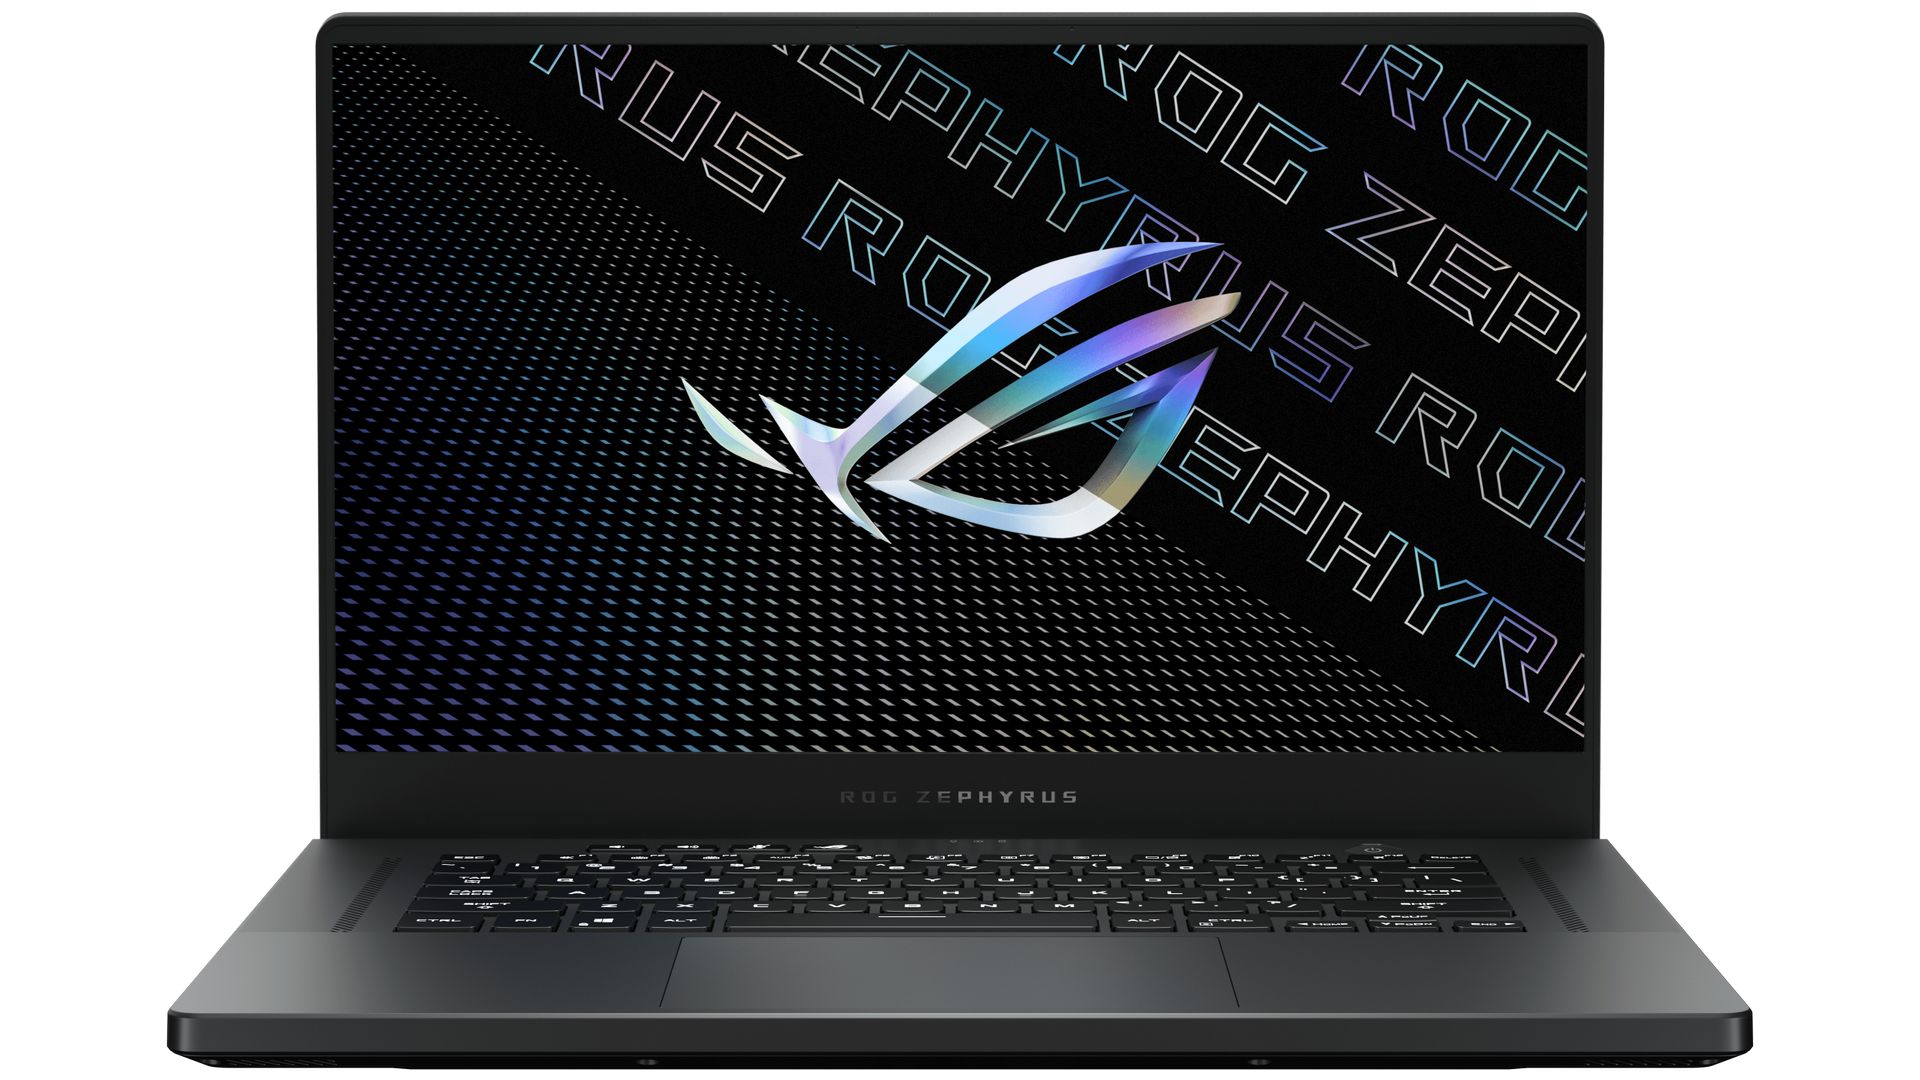 Laptop ASUS ROG Zephyrus G15 GA503QS-HQ052T là một sản phẩm tuyệt vời trong thế giới laptop gaming. Cấu hình mạnh mẽ, kiểu dáng sang trọng và tính năng cao cấp sẽ khiến cho bạn phải say mê ngay từ lần đầu tiên nhìn thấy nó. Hãy xem hình ảnh liên quan để tìm hiểu thêm về chiếc laptop đáng mơ ước này!